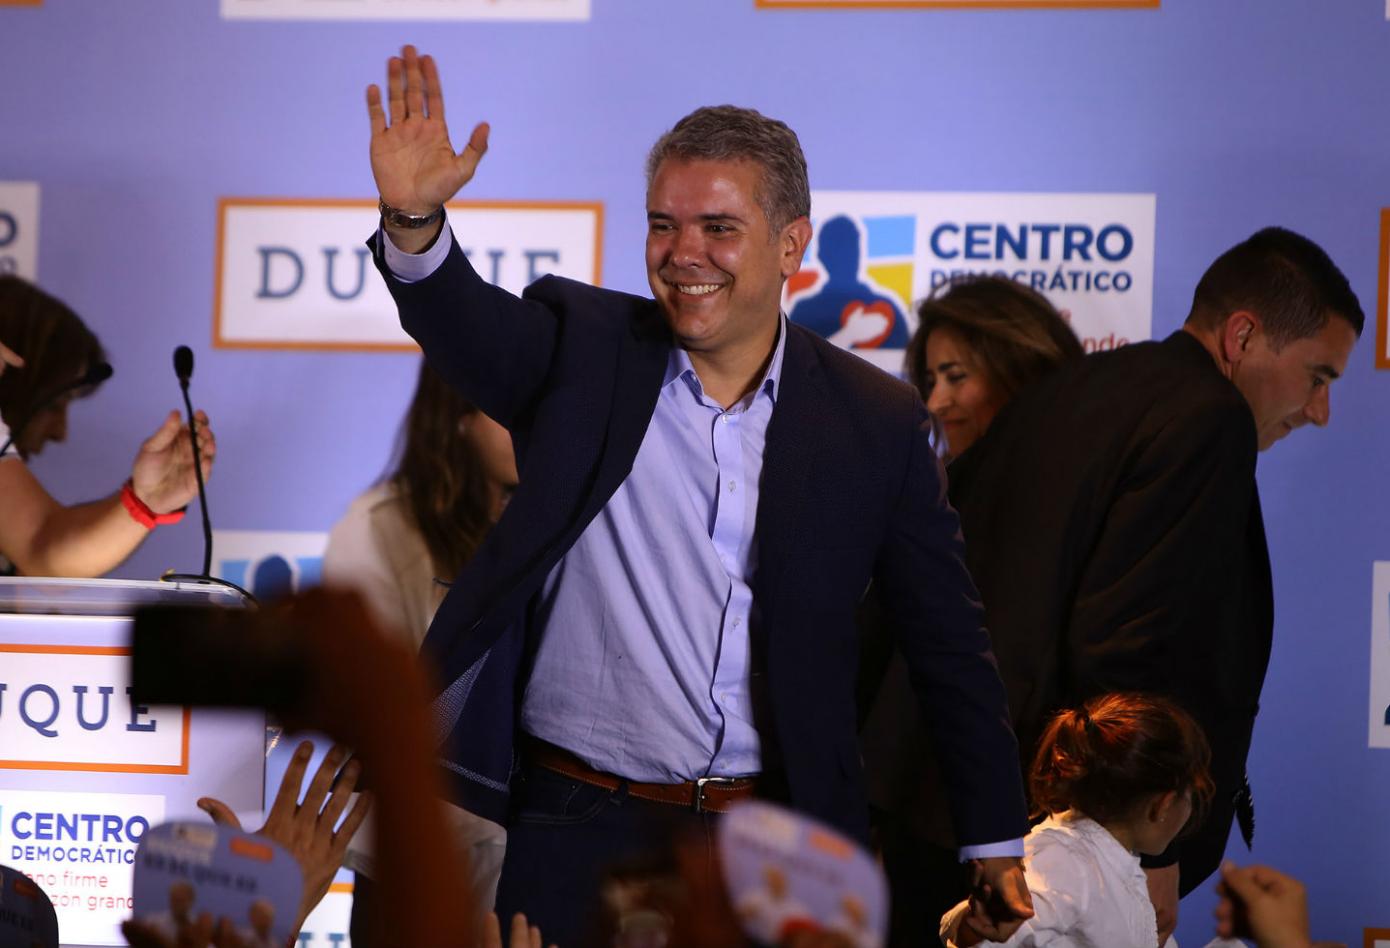 Ganó la Coherencia. Ivan Duque Presidente de Colombia